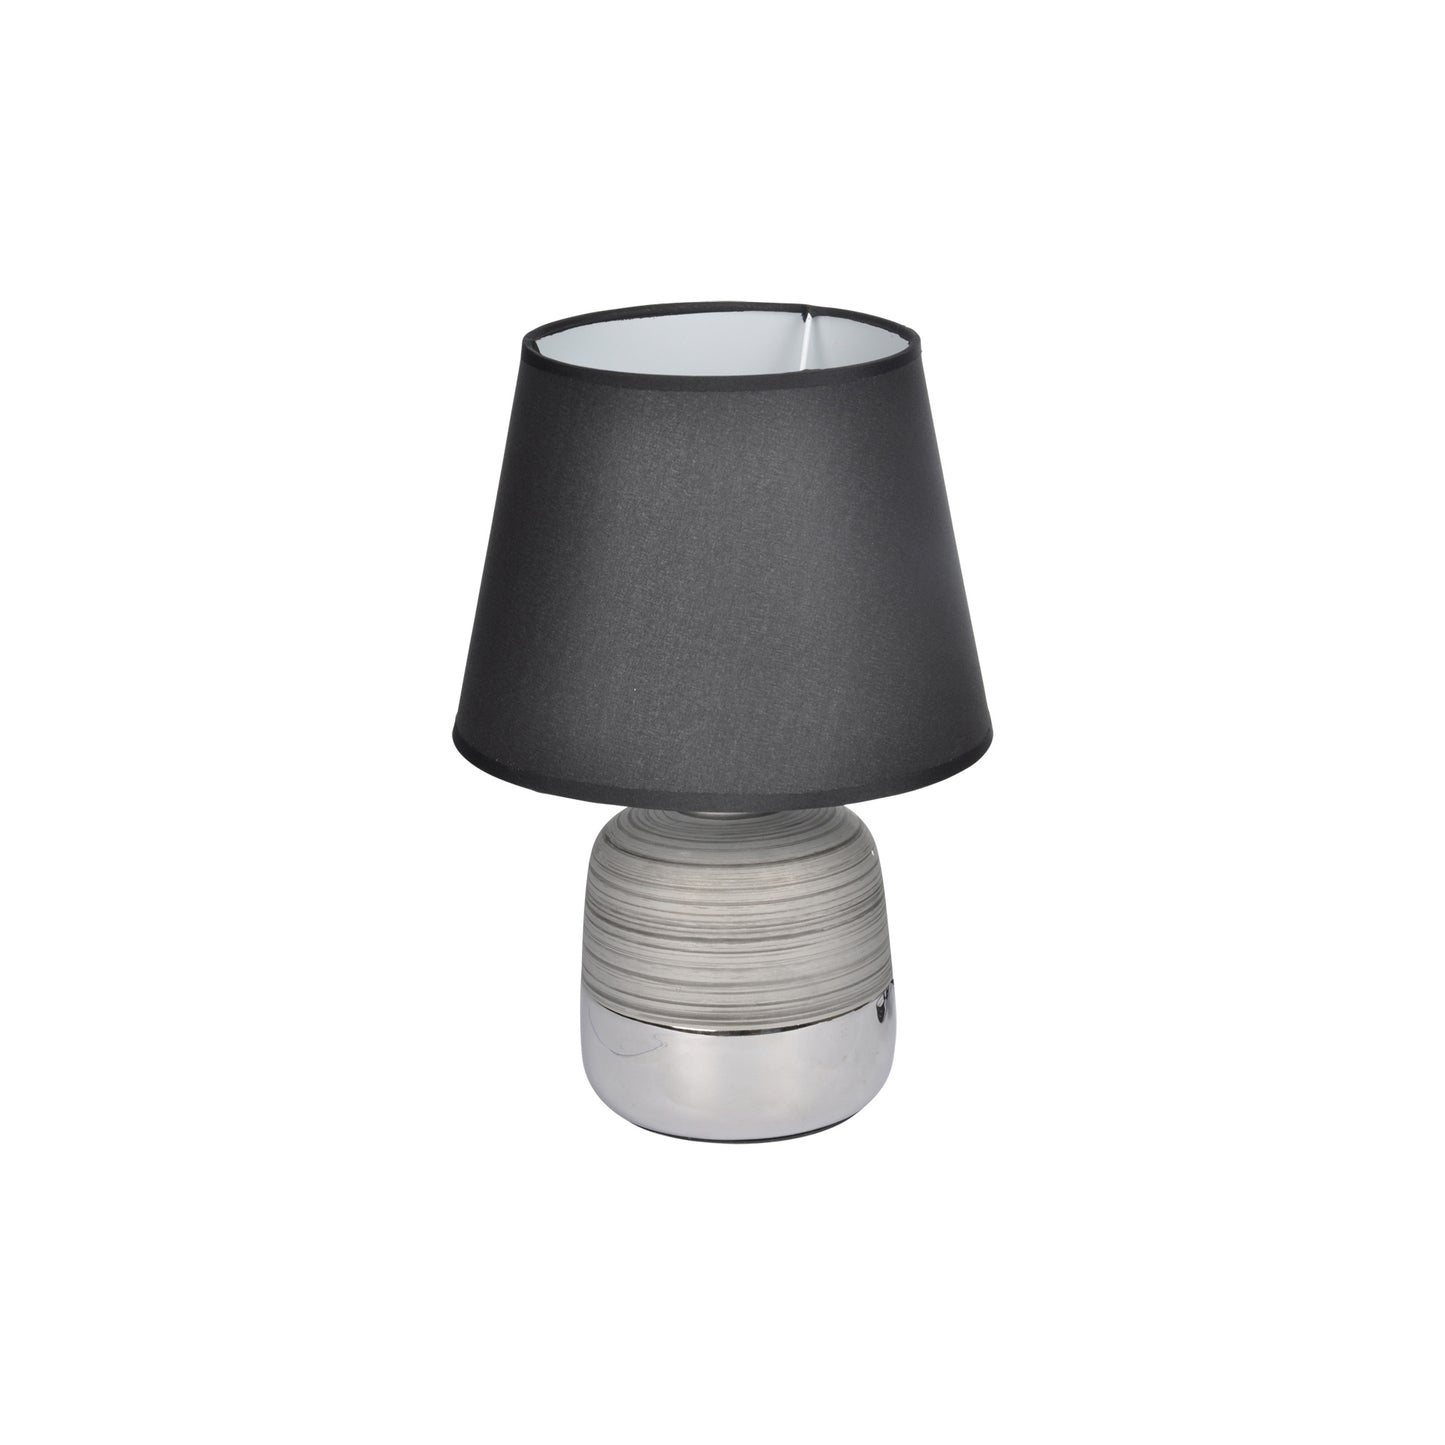 Homea Keramik Tischlampe Tischleuchte Nachttisch Lampe Leuchte Beton Stein Optik